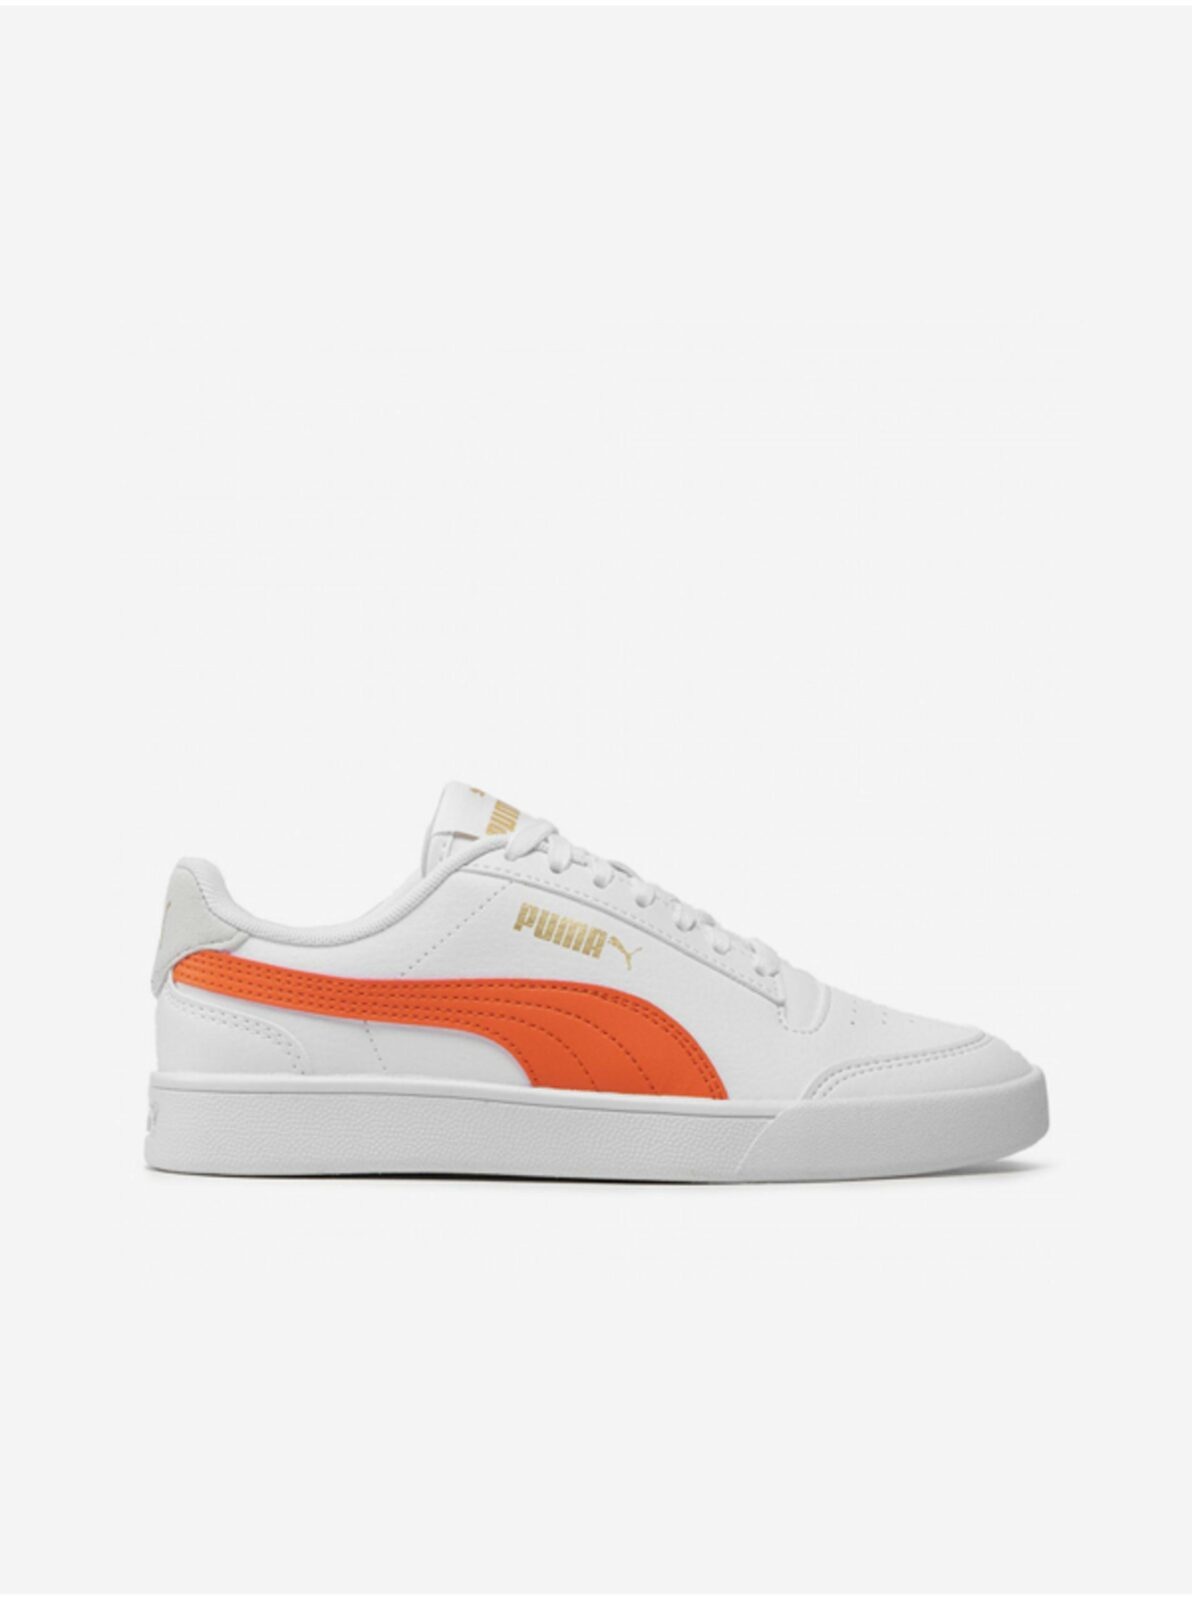 Oranžovo-bílé dětské tenisky Puma Shuffle